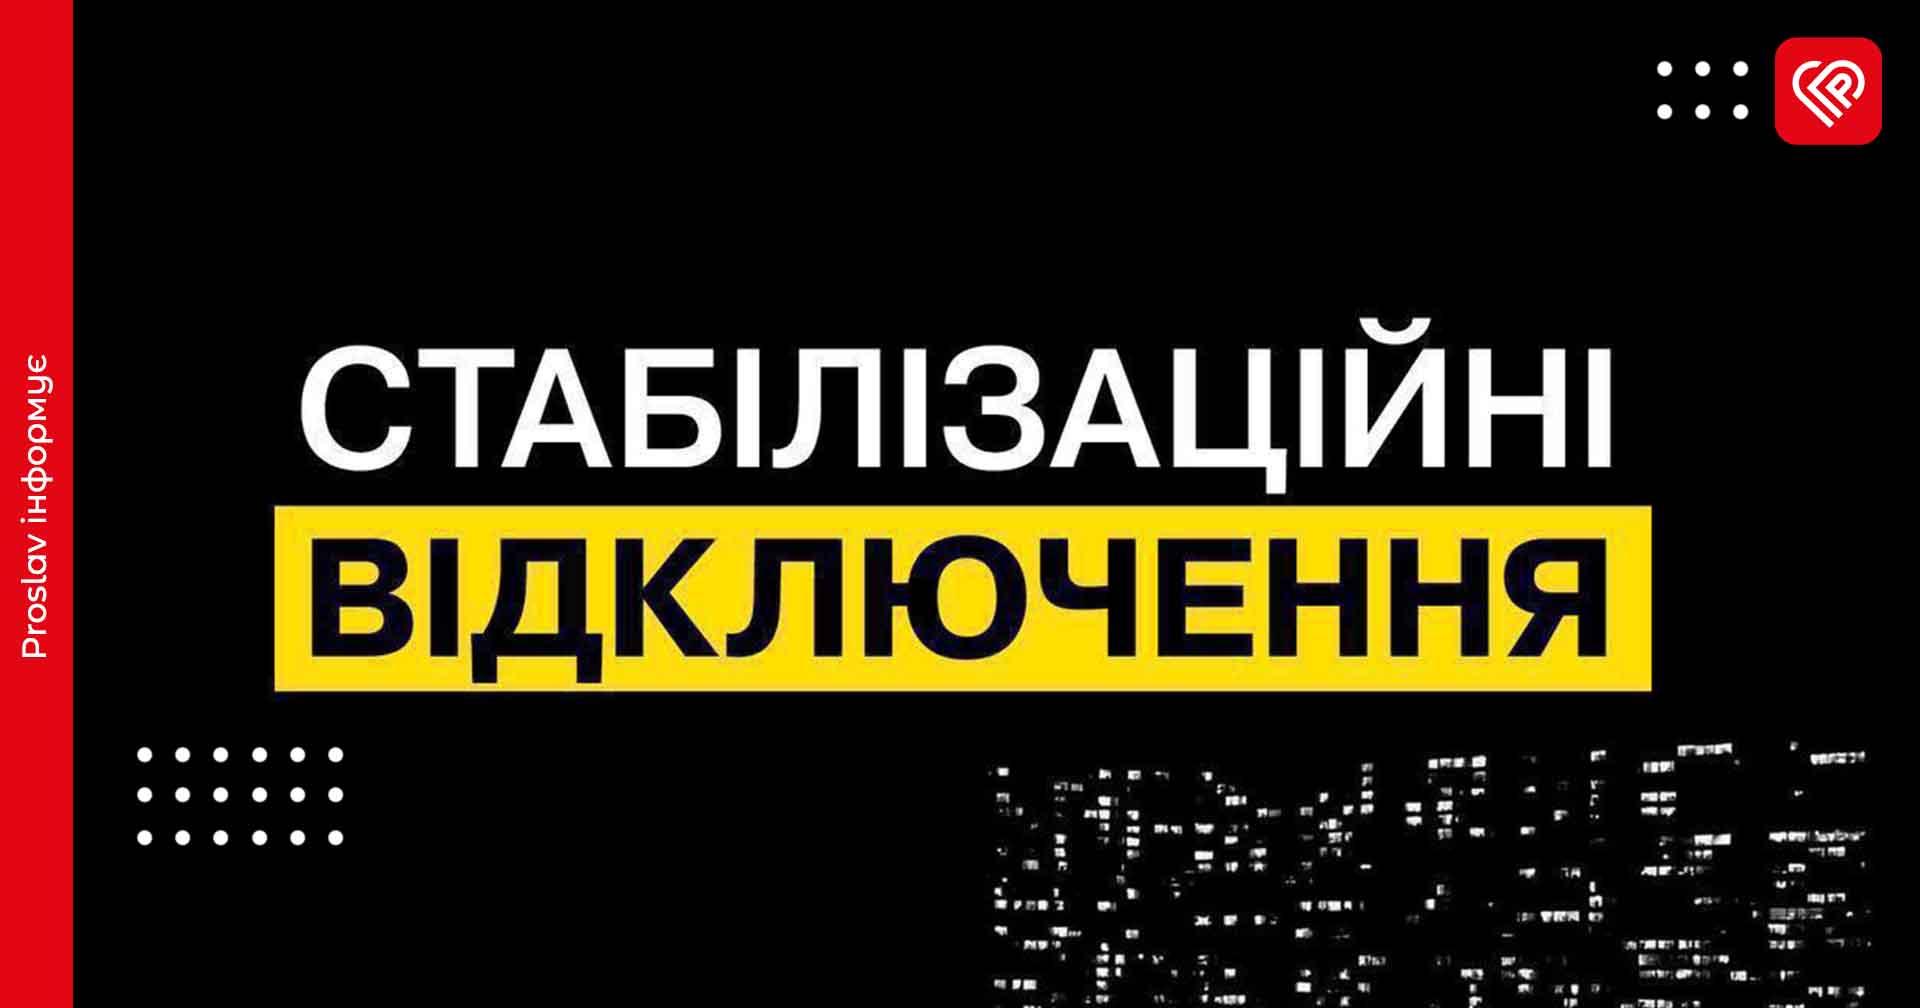 Як діятимуть графіки відключень на Київщині 25 липня: пояснення ДТЕК